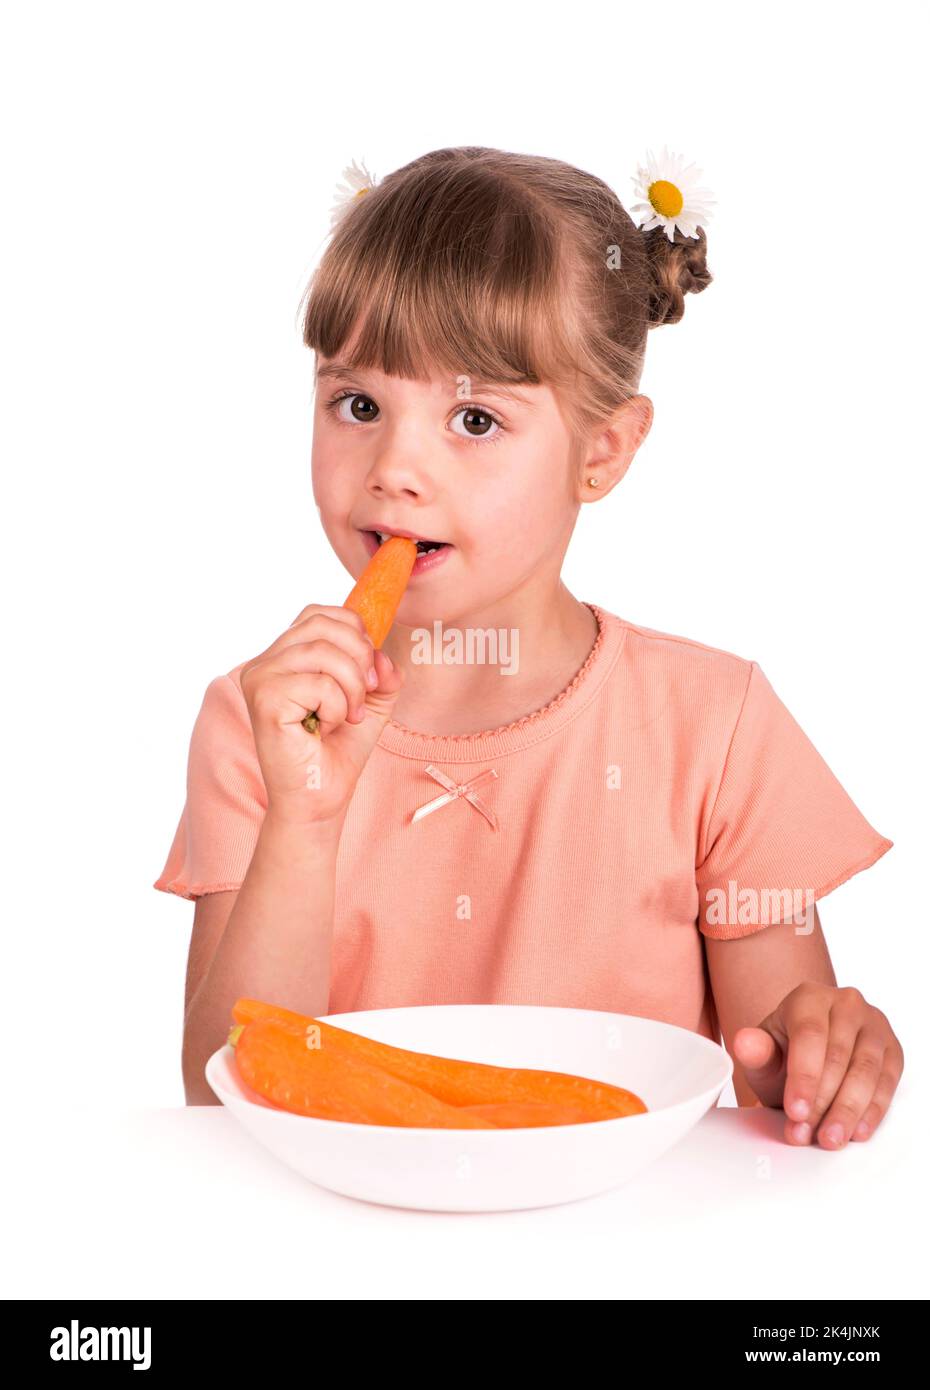 Jolie petite fille avec la carotte sur fond blanc Banque D'Images